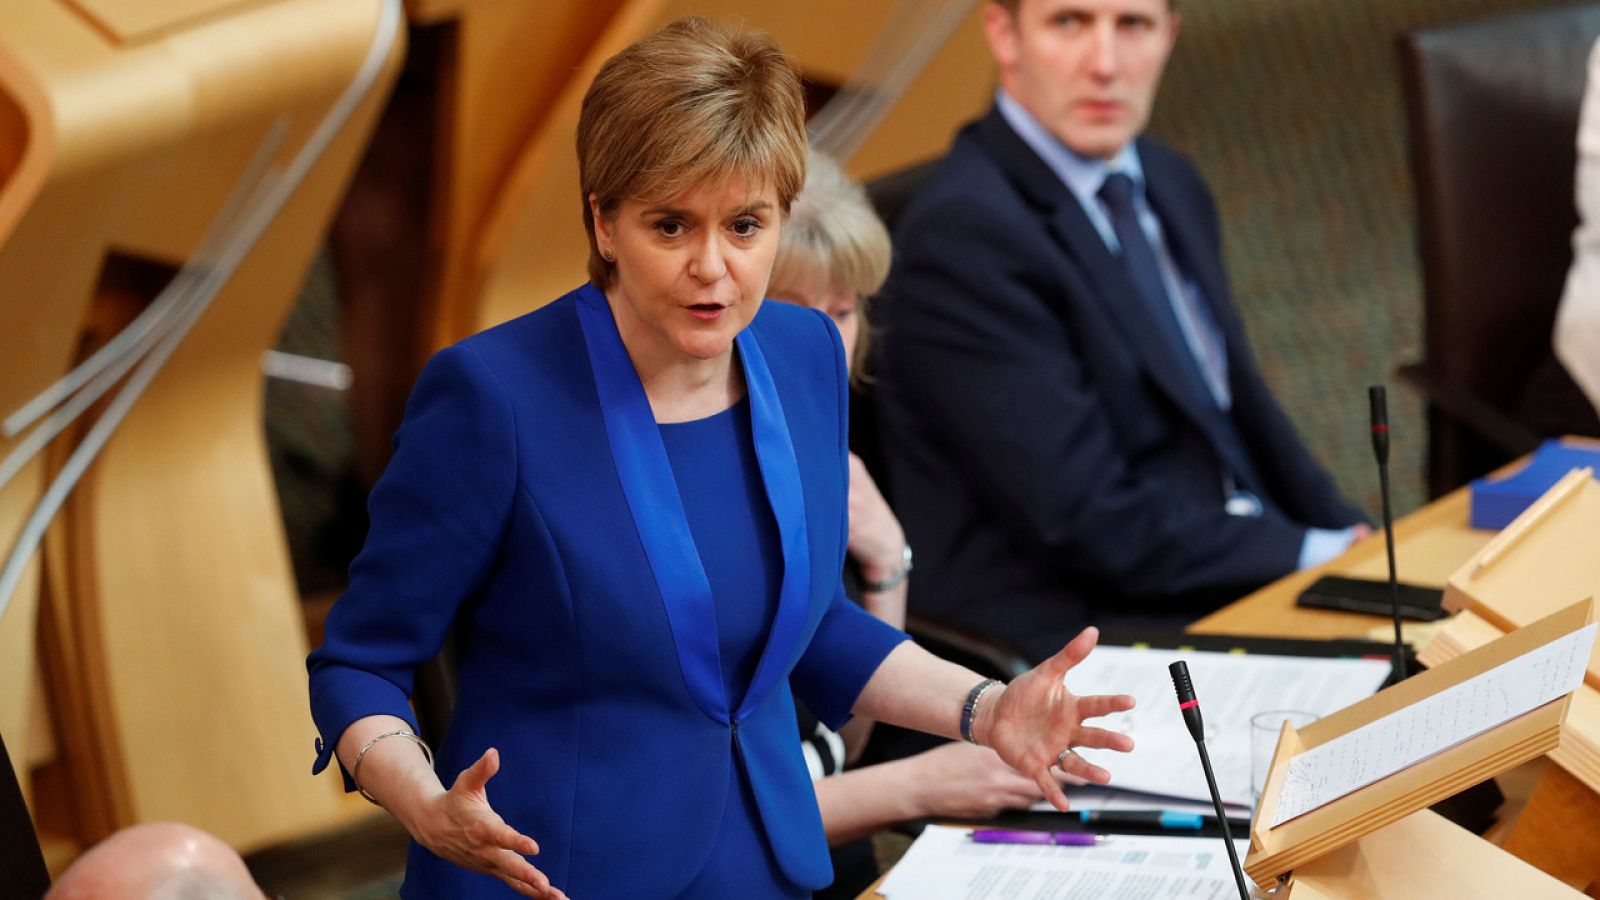 La ministra principal de escocia, Nicola Sturgeon, habla en el Parlamento de Edimburgo